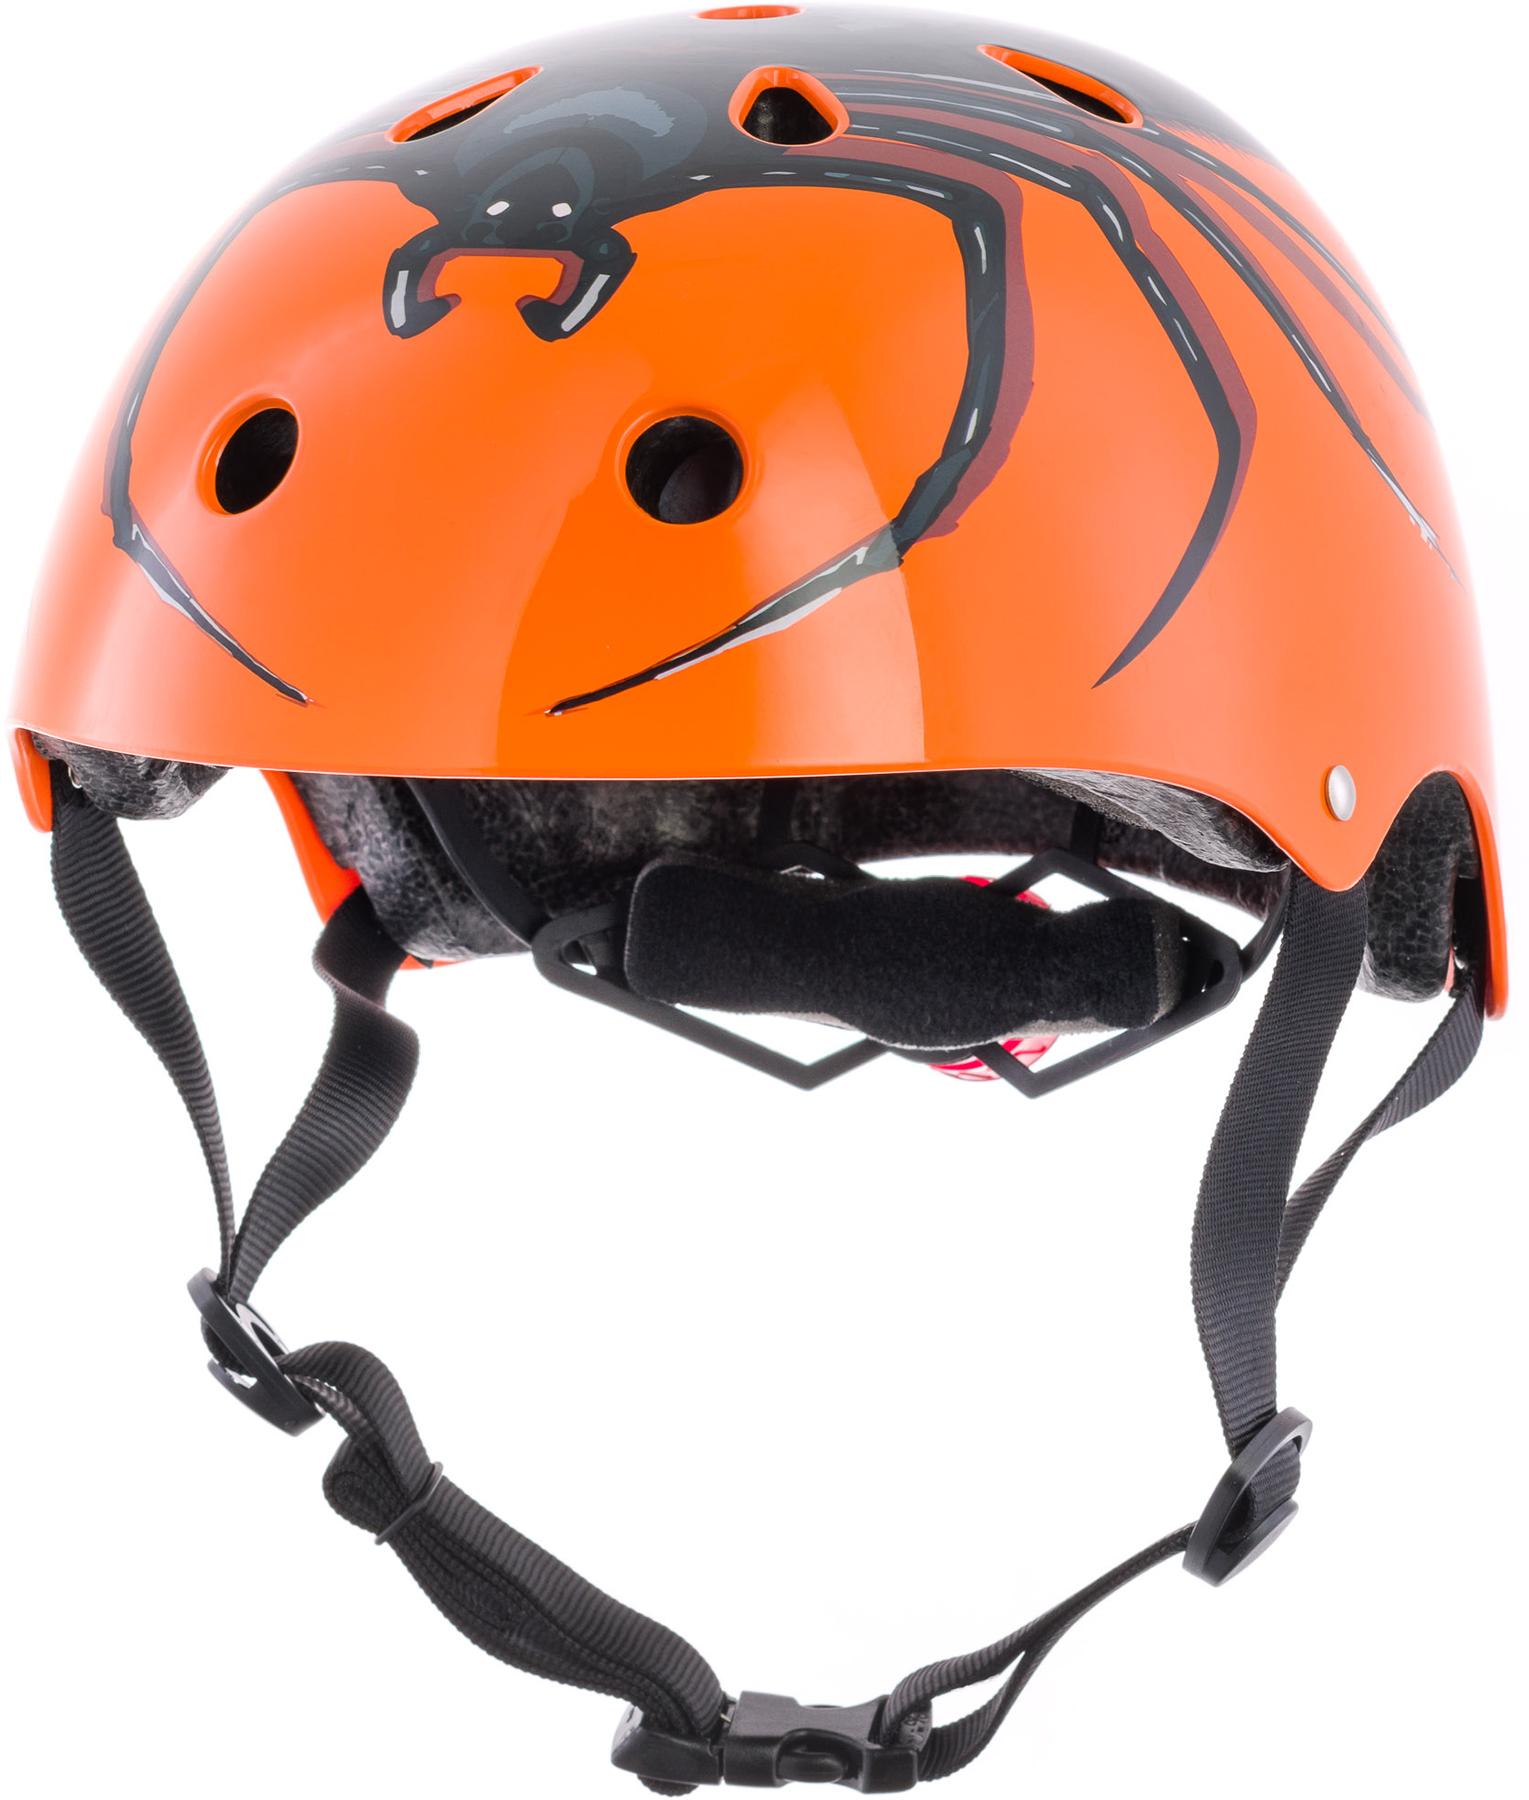 Hornit Kids Helmet - Spider